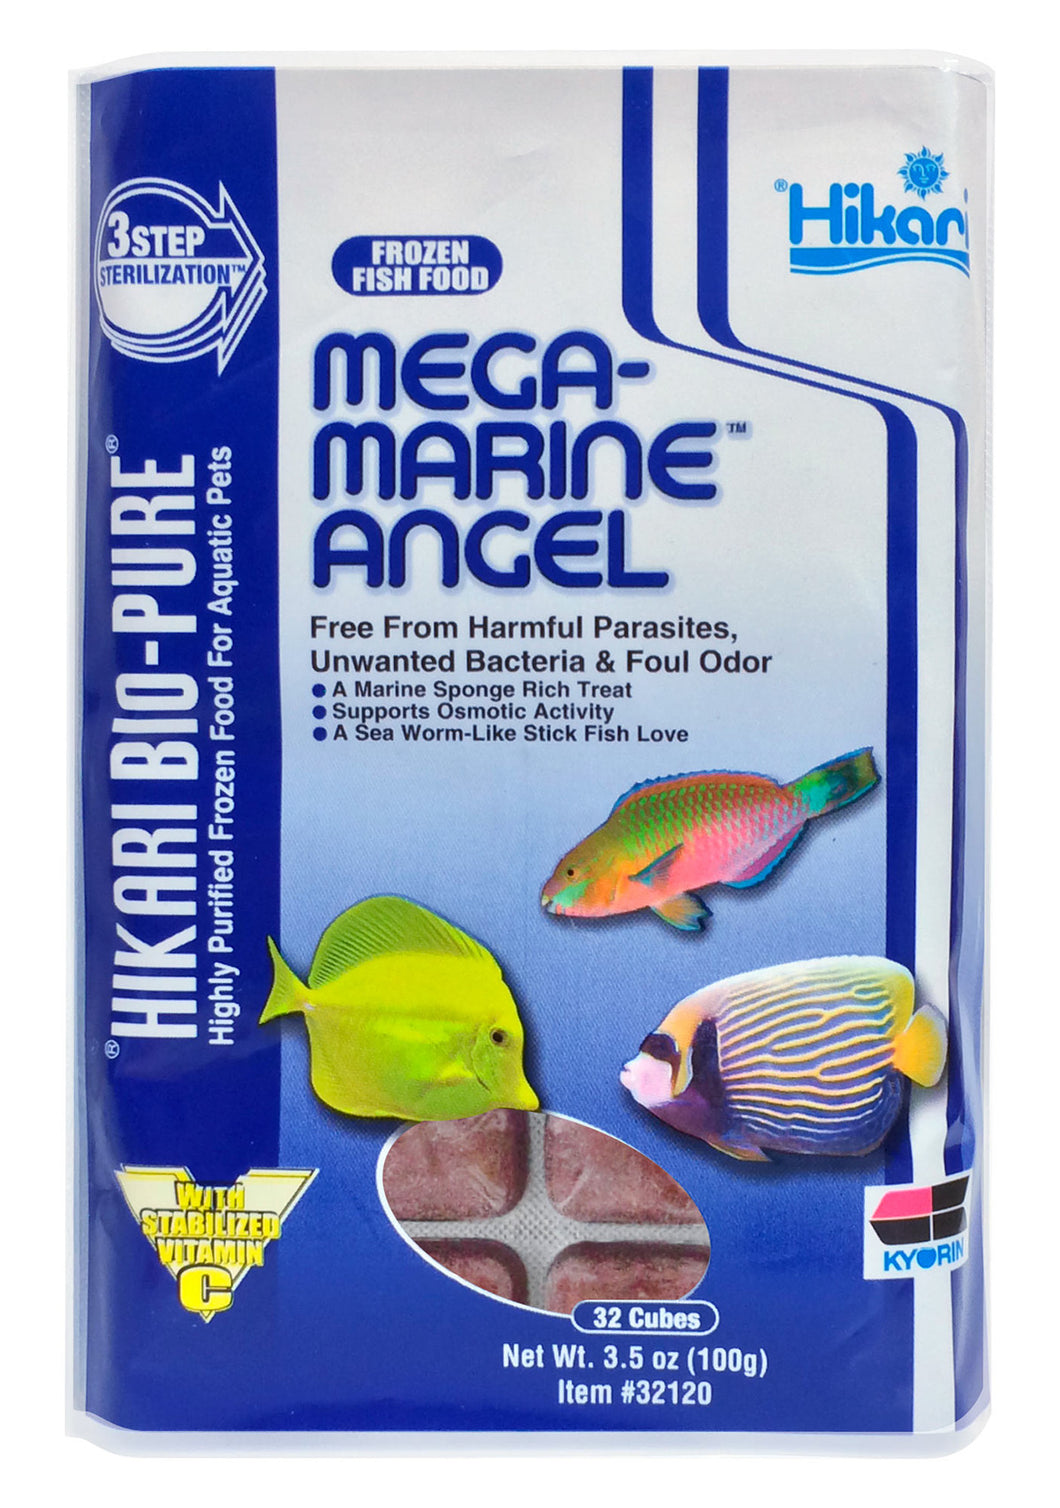 Hikari Mega-Marine Angel